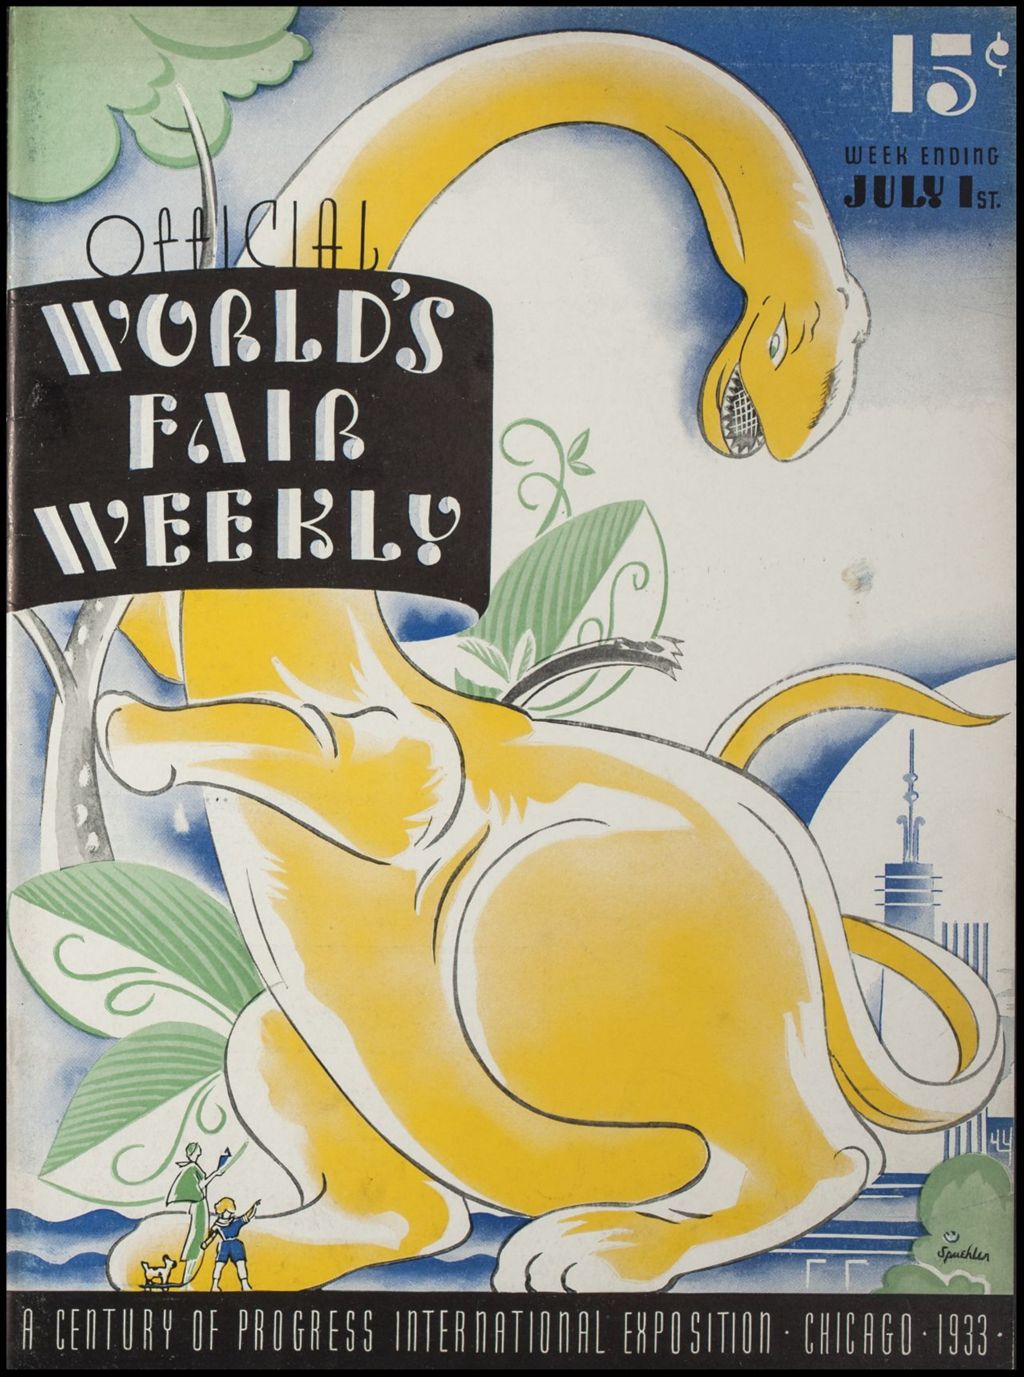 Miniature of World's Fair Weekly, Week Ending July 1, 1933